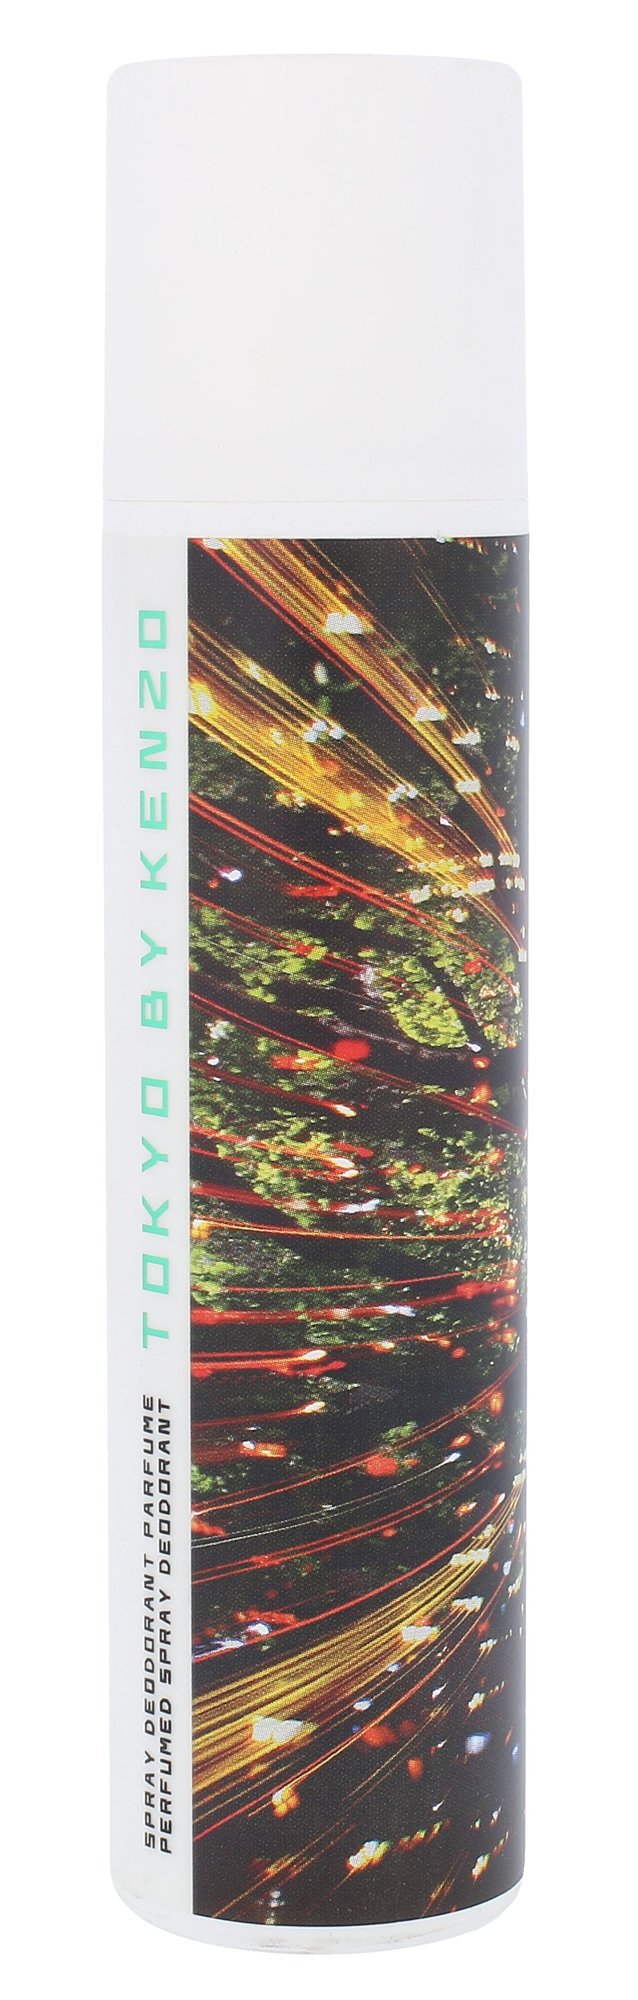 Kenzo Tokyo 150ml dezodorantas